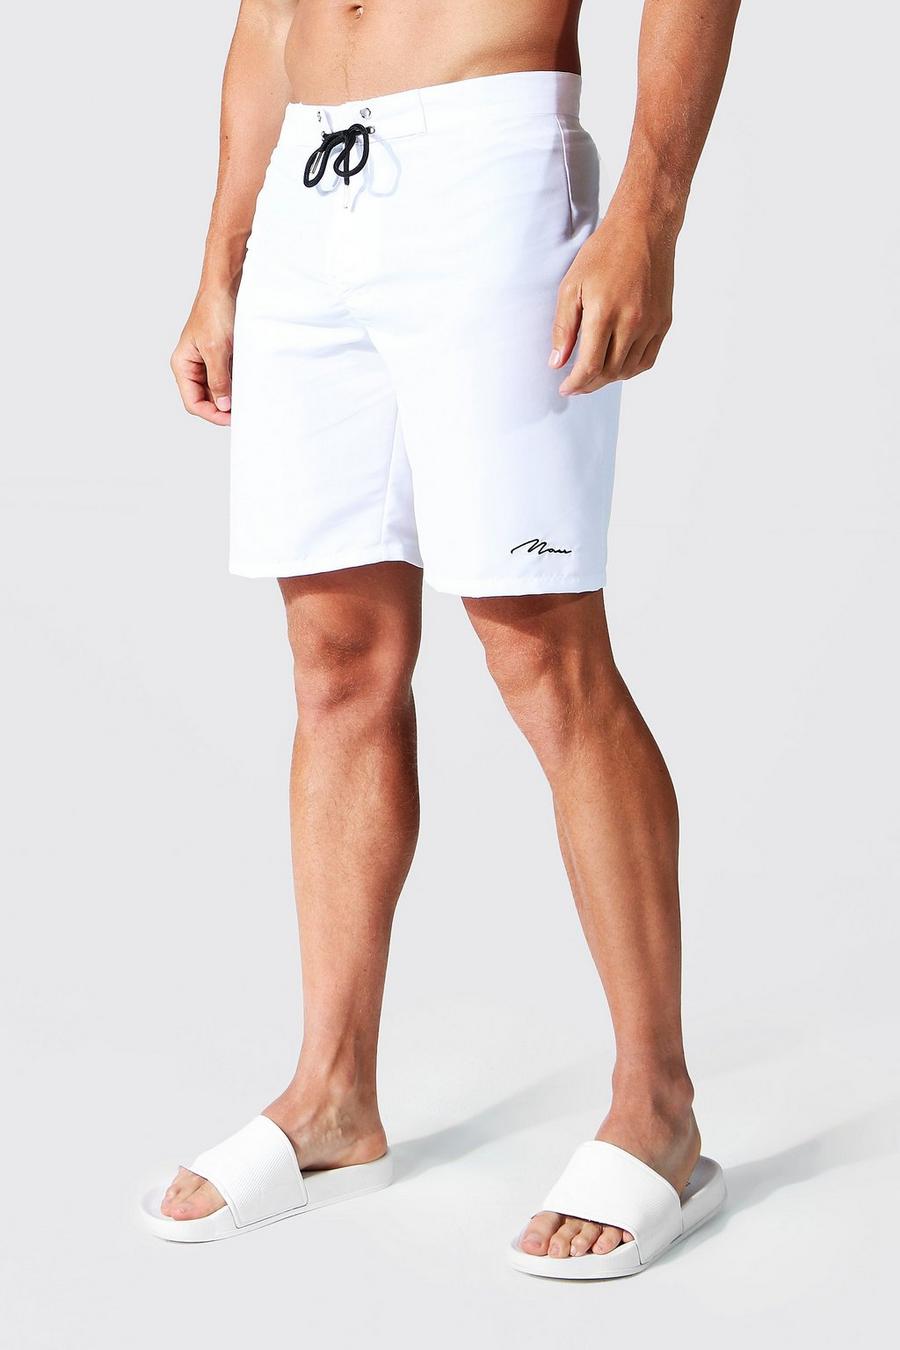 Costume a pantaloncino in fibre riciclate con firma Man, White bianco